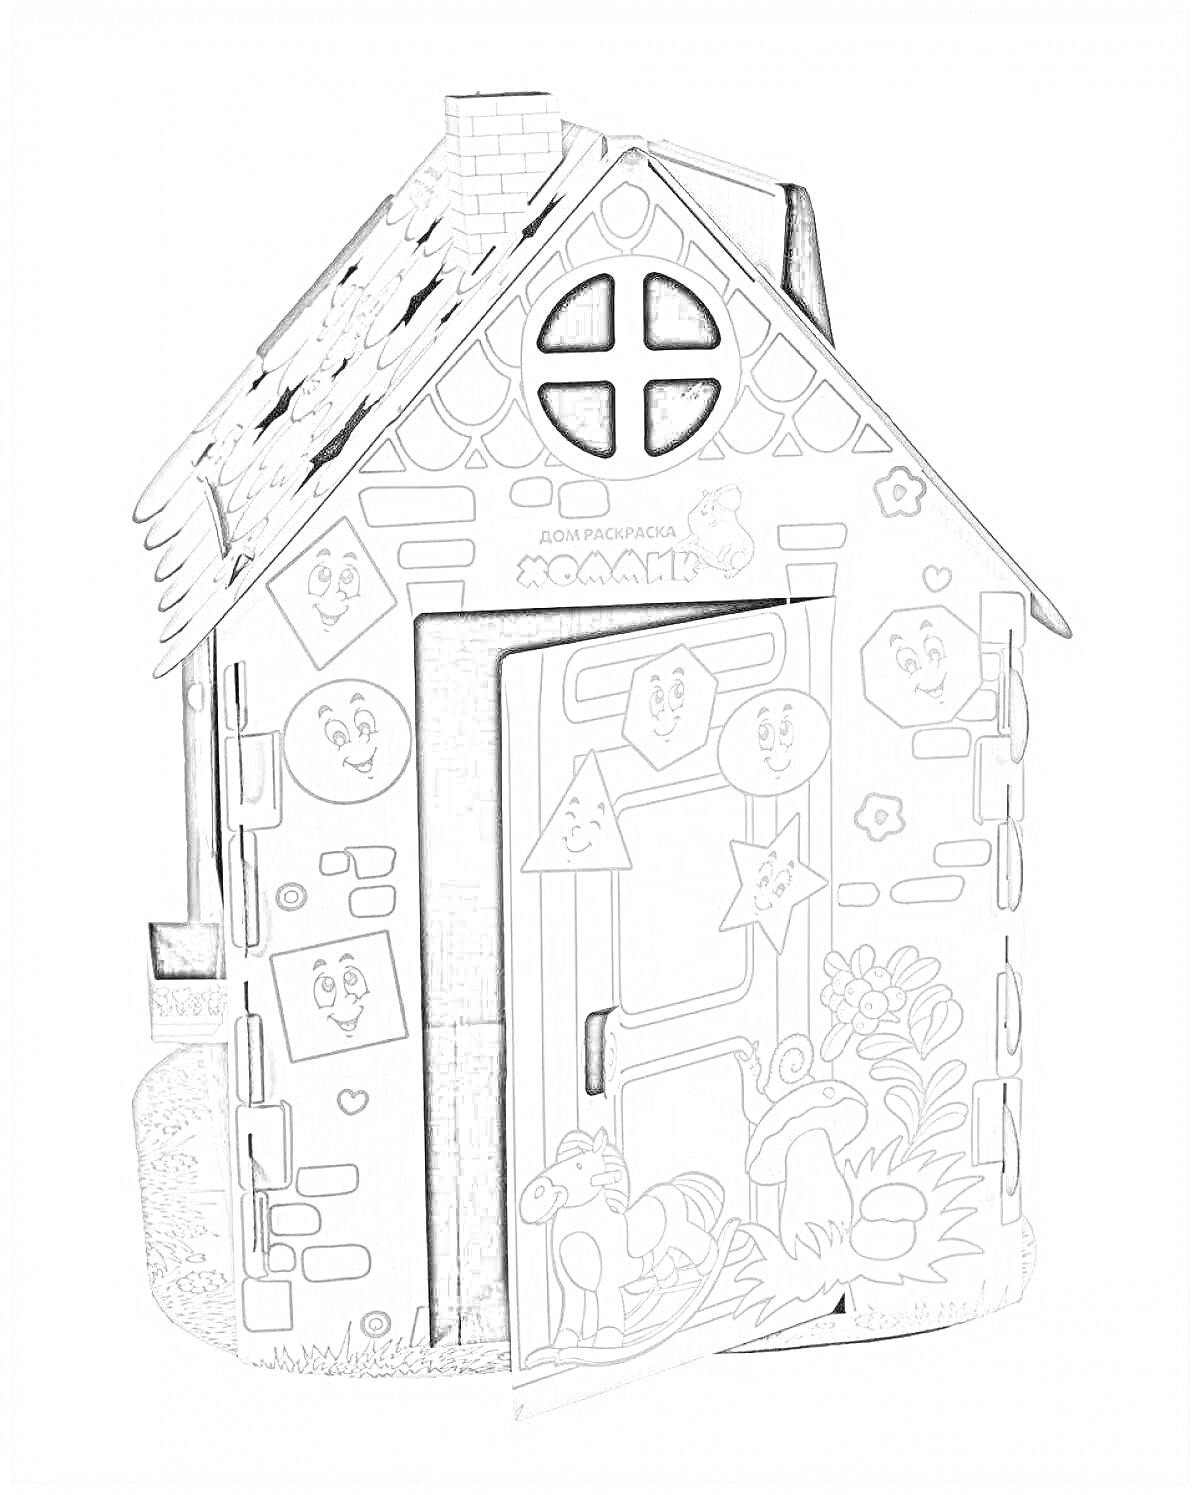 Раскраска Картонный дом с дверью, окно, труба на крыше, множество декоративных элементов, таких как цветы, деревья, звезды и лица смайликов